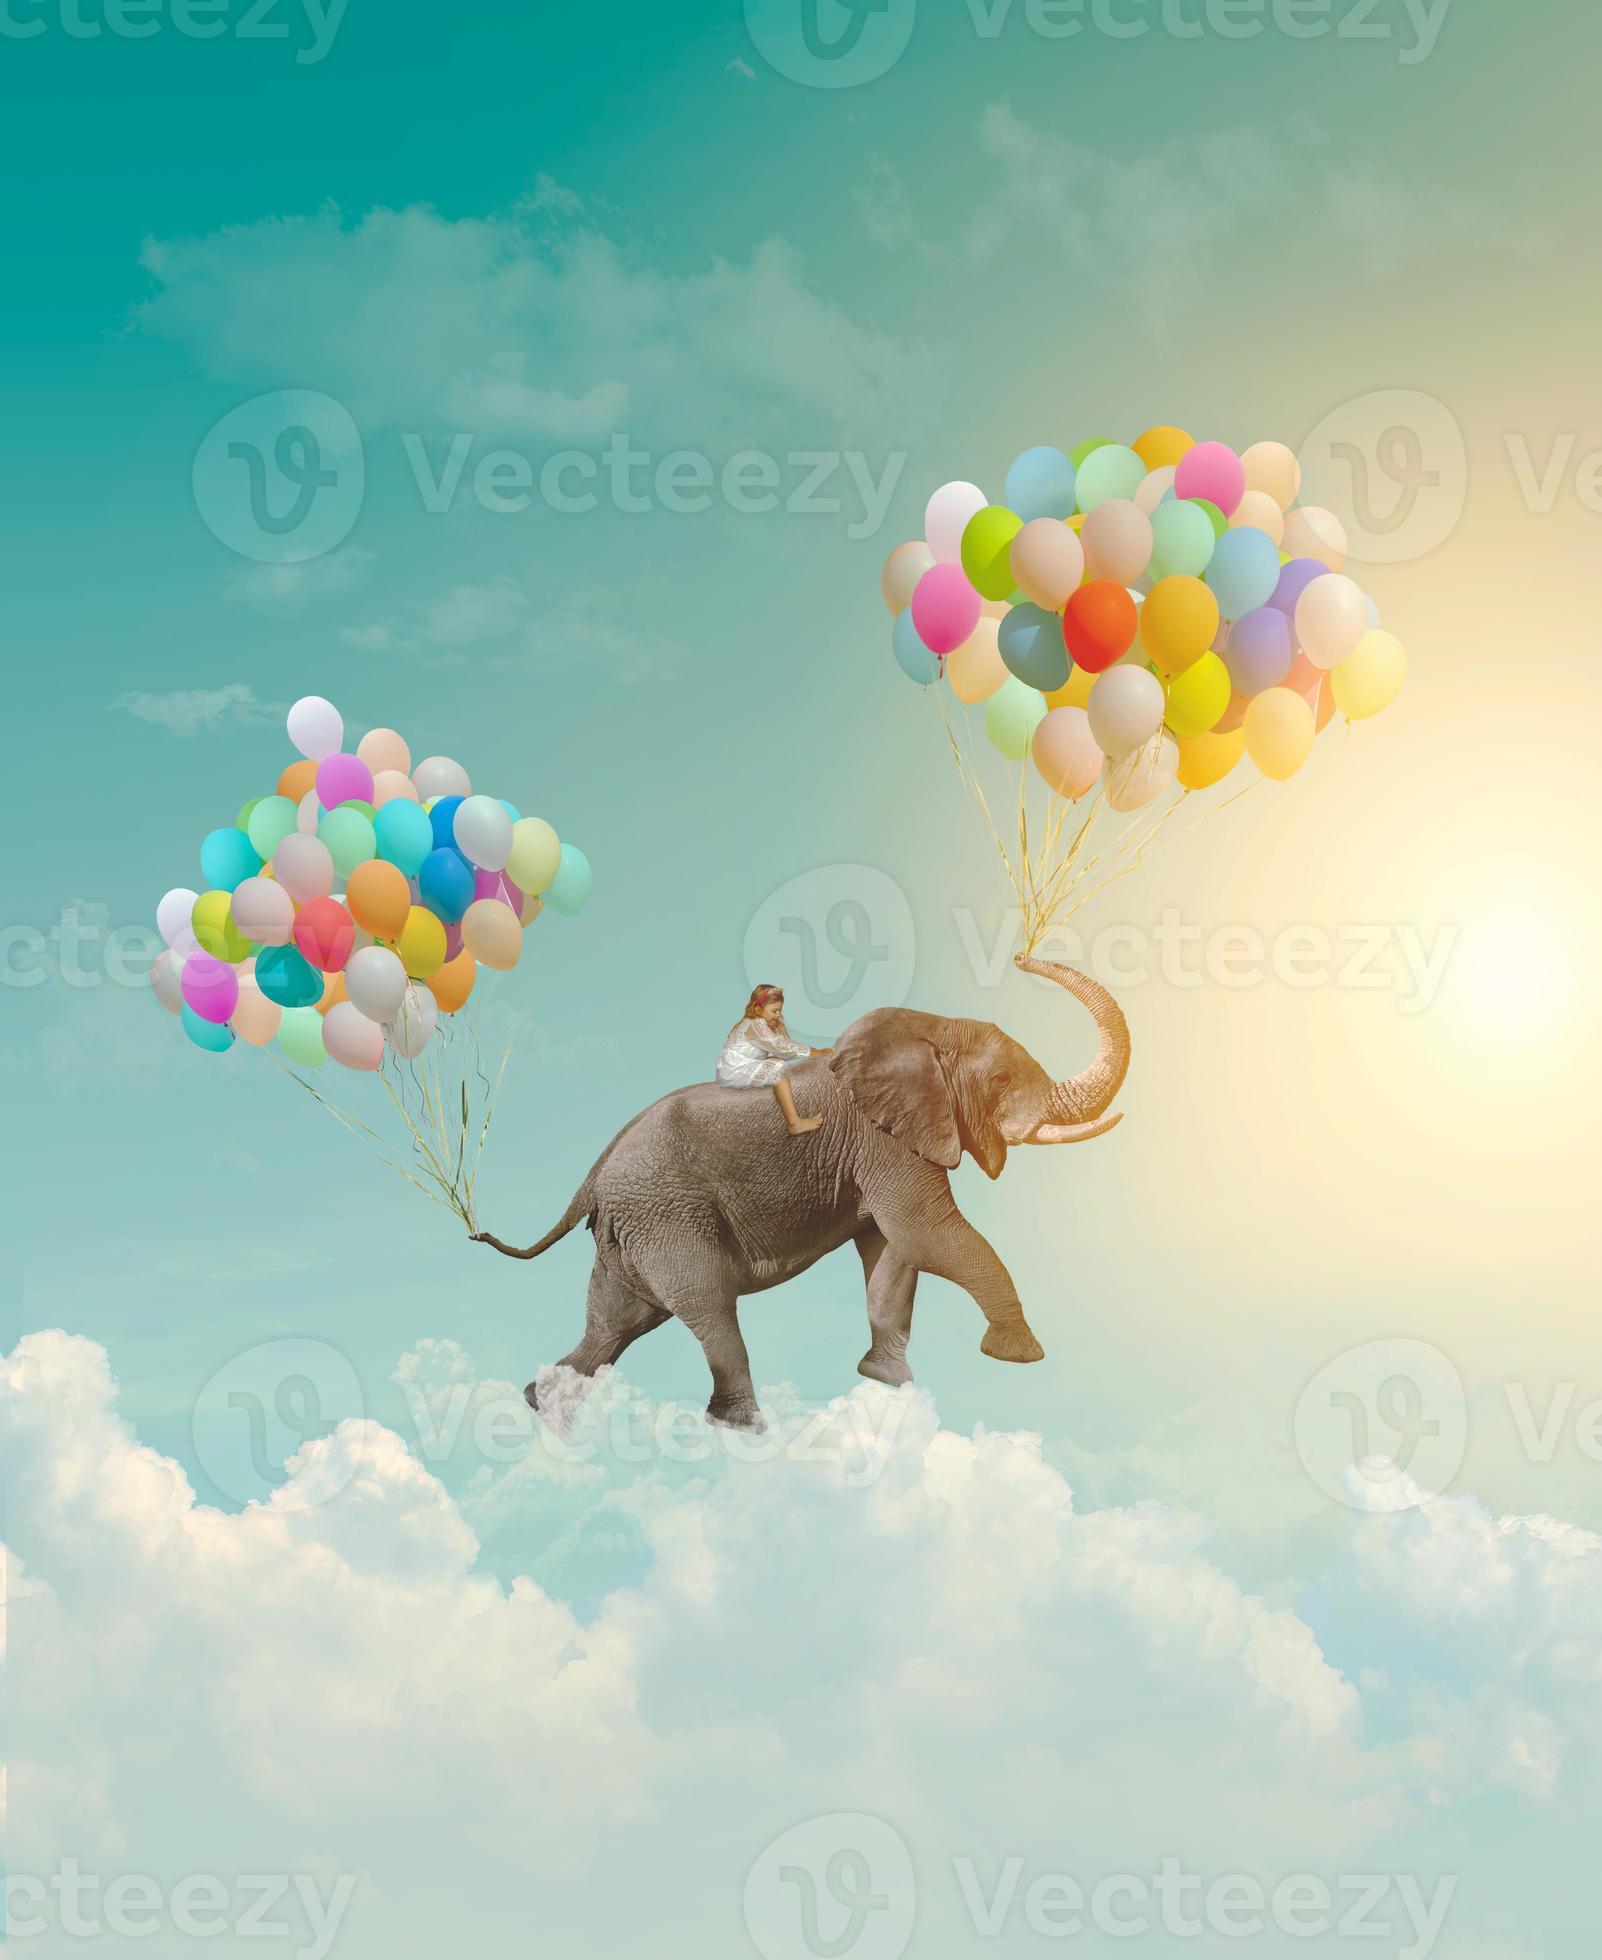 Petite fille chevauchant un éléphant avec des ballons volant dans le concept de réalisation de métaphore fantastique de ciel photo